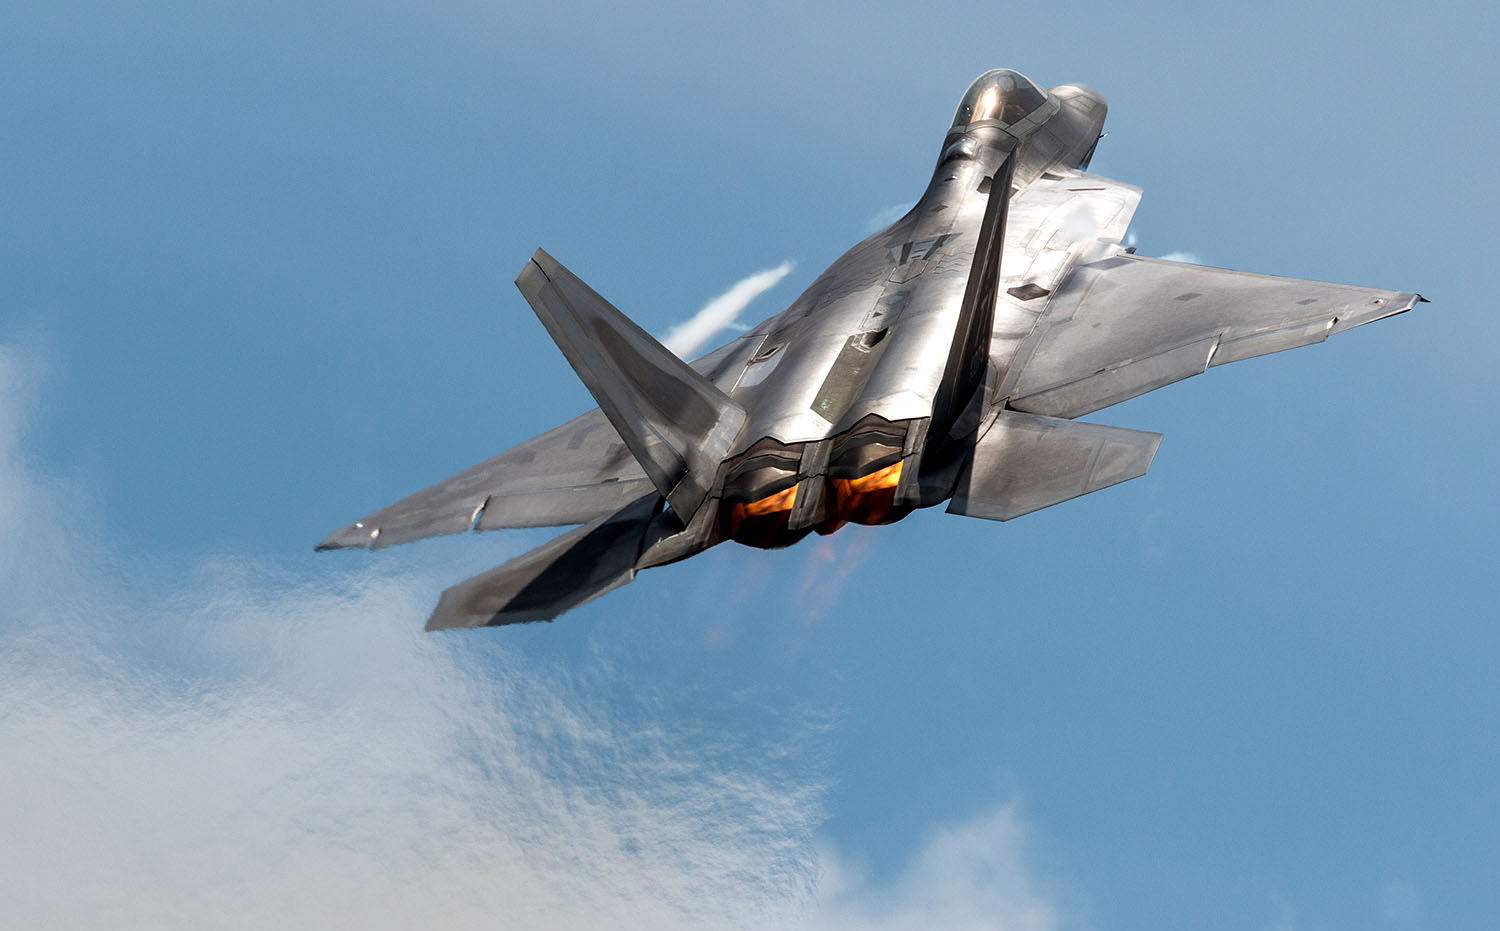 Hé lộ bí mật động trời về tiêm kích F-22, điểm yếu của Không quân Mỹ bị phơi bày